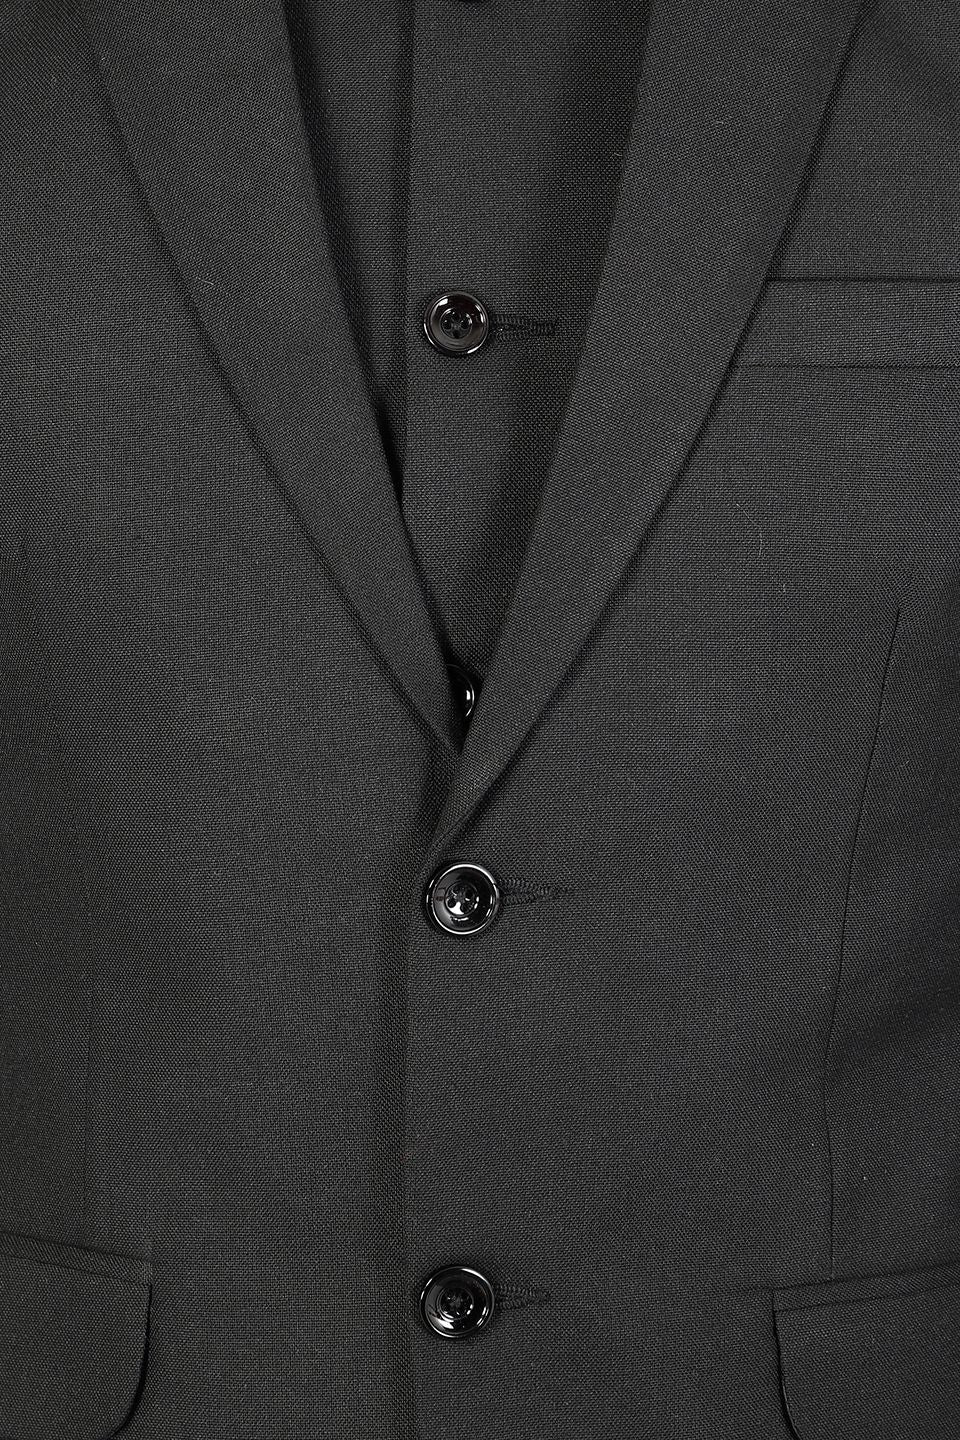 Polyester Cotton Plain Black Three Piece Suit